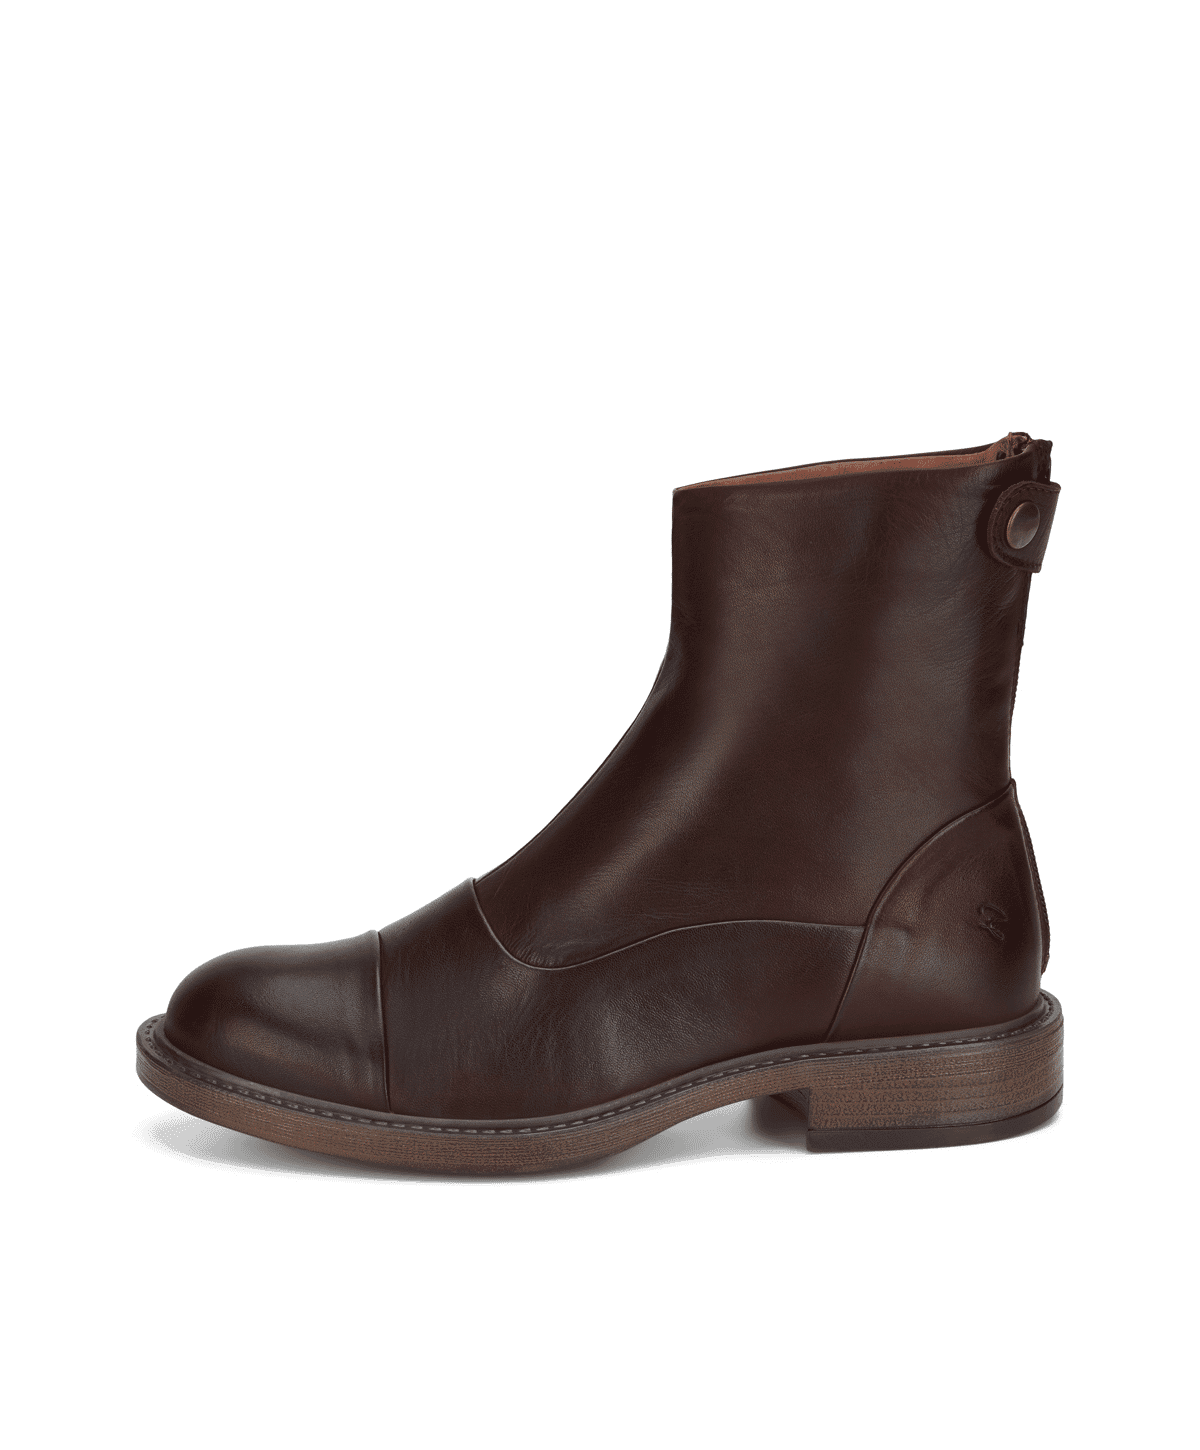 Erhverv Unravel Marine Shoedesign Copenhagen Dahlia støvle i brun | Damkjær Sko 》